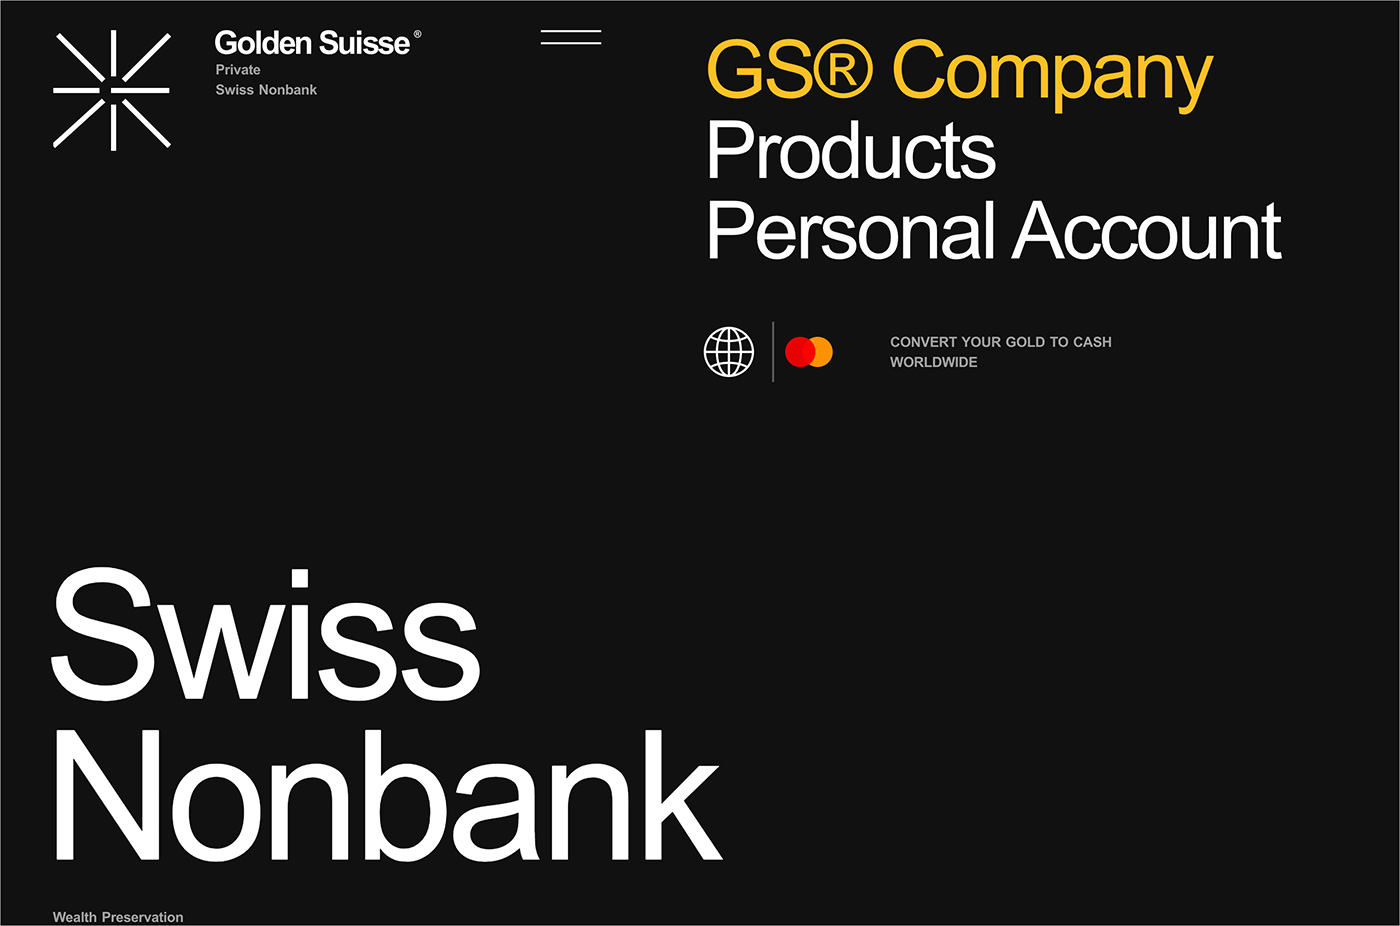 Golden Suisseウェブサイトの画面キャプチャ画像